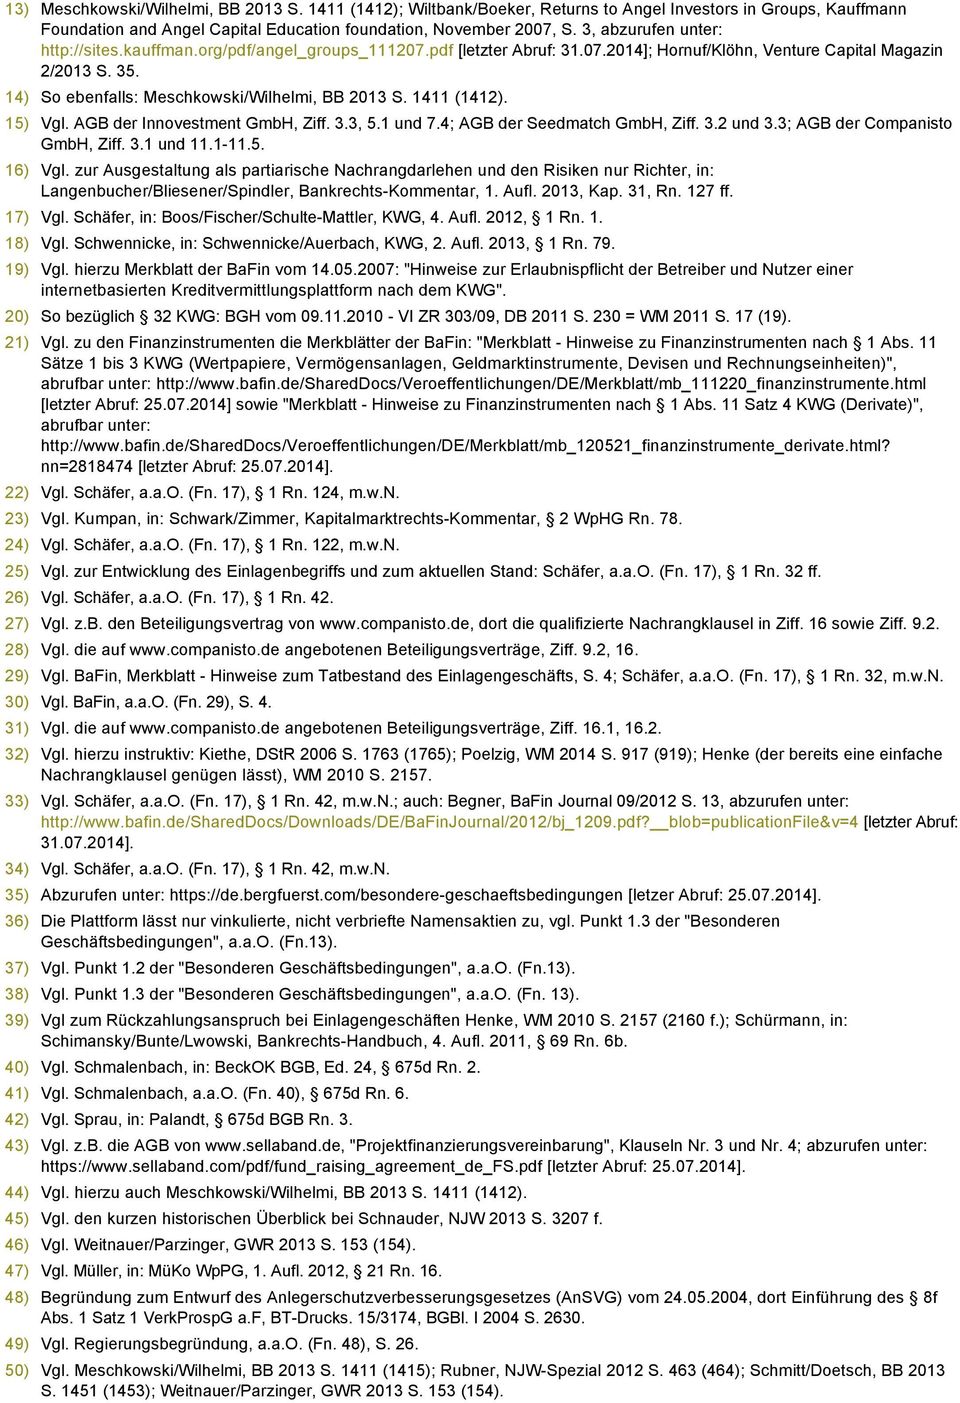 14) So ebenfalls: Meschkowski/Wilhelmi, BB 2013 S. 1411 (1412). 15) Vgl. AGB der Innovestment GmbH, Ziff. 3.3, 5.1 und 7.4; AGB der Seedmatch GmbH, Ziff. 3.2 und 3.3; AGB der Companisto GmbH, Ziff. 3.1 und 11.